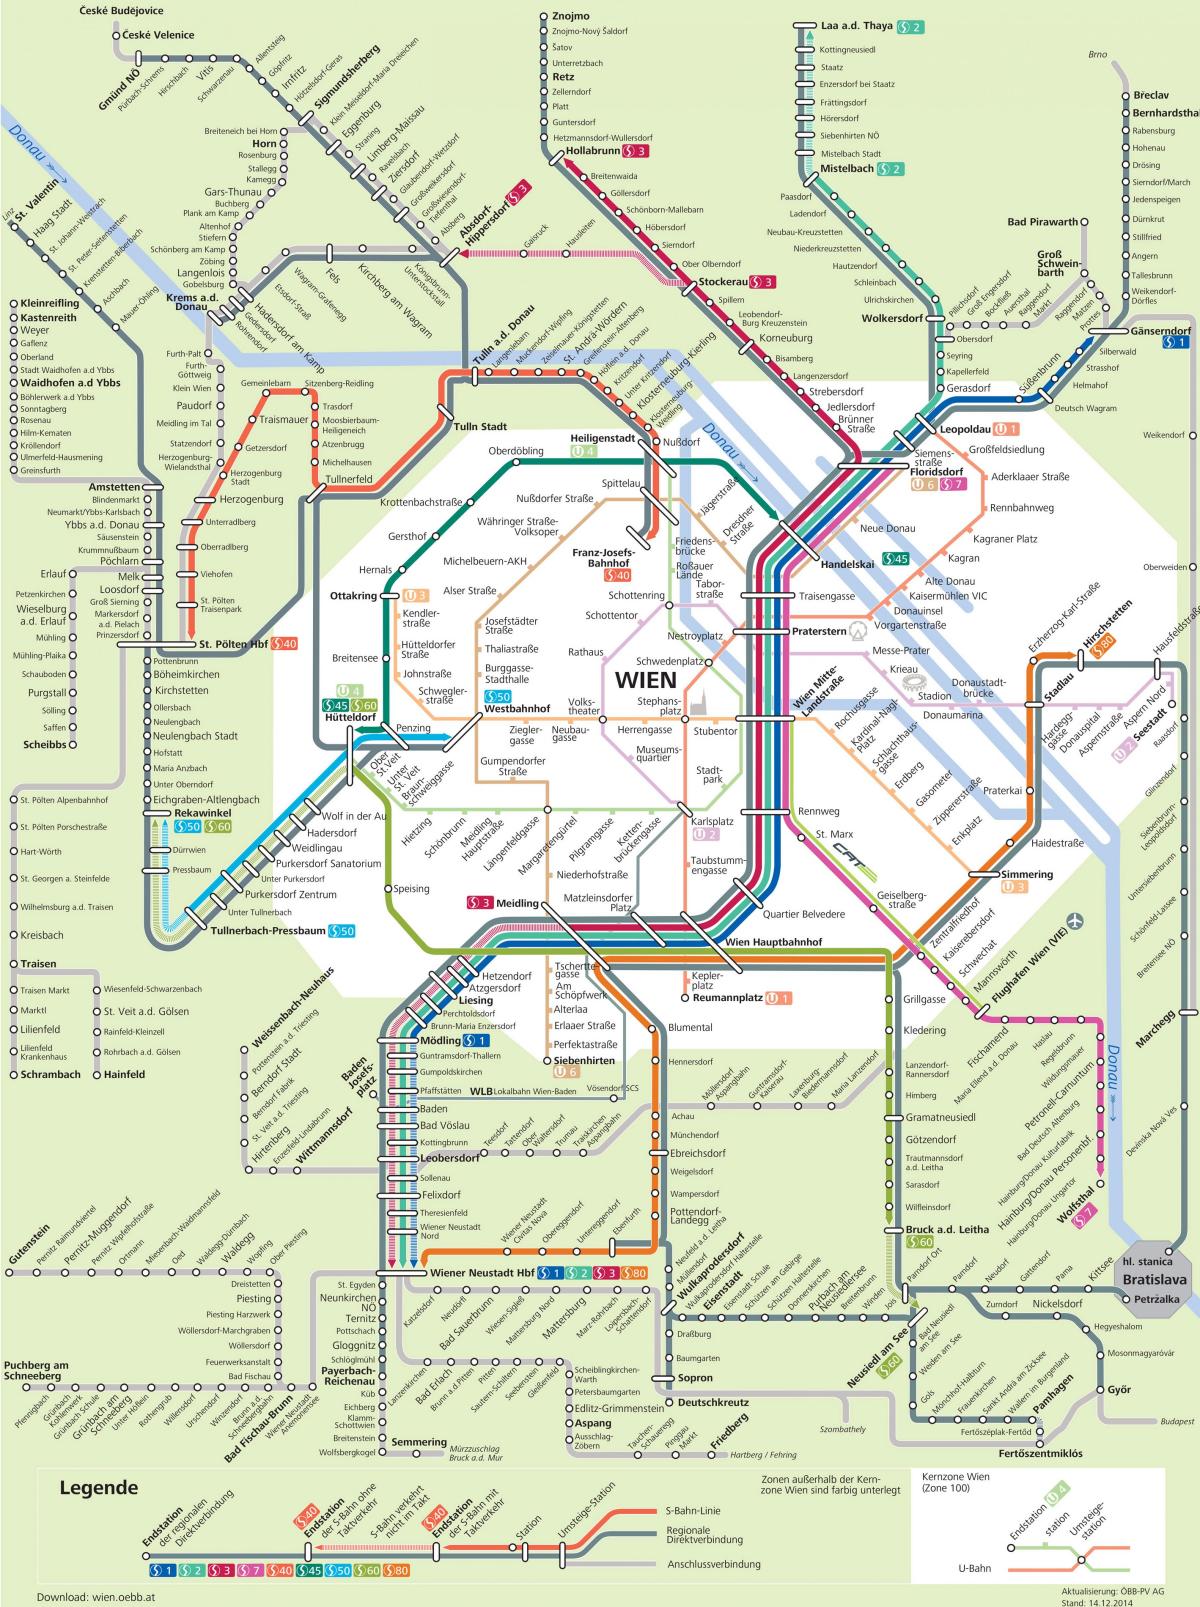 Wiedeński transport miejski mapie